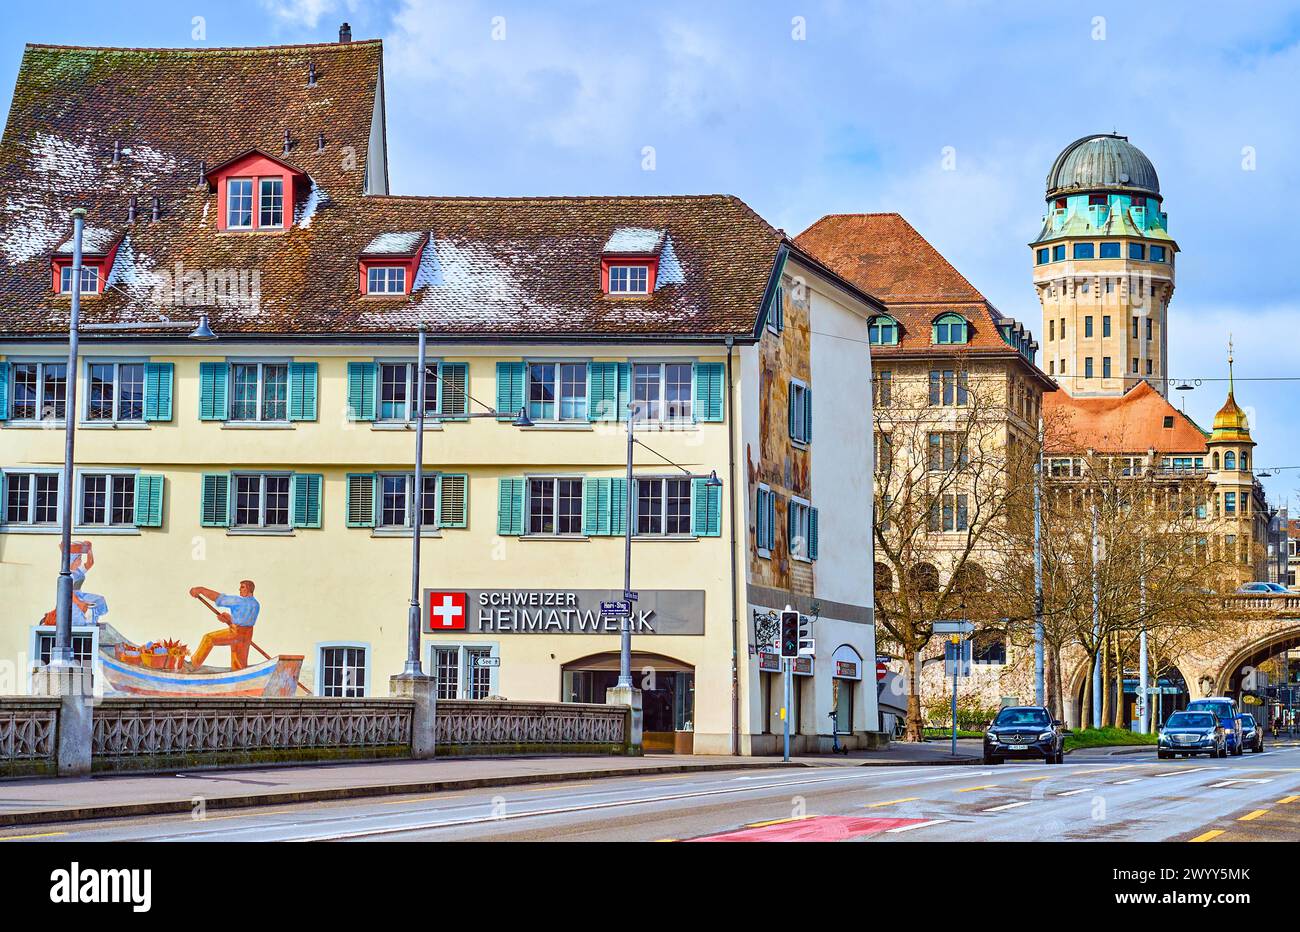 ZURIGO, SVIZZERA - 3 APRILE 2022: La scena urbana nella vecchia Zurigo con gli edifici storici del quartiere Schipfe, il 3 aprile a Zurigo, Svizzera Foto Stock